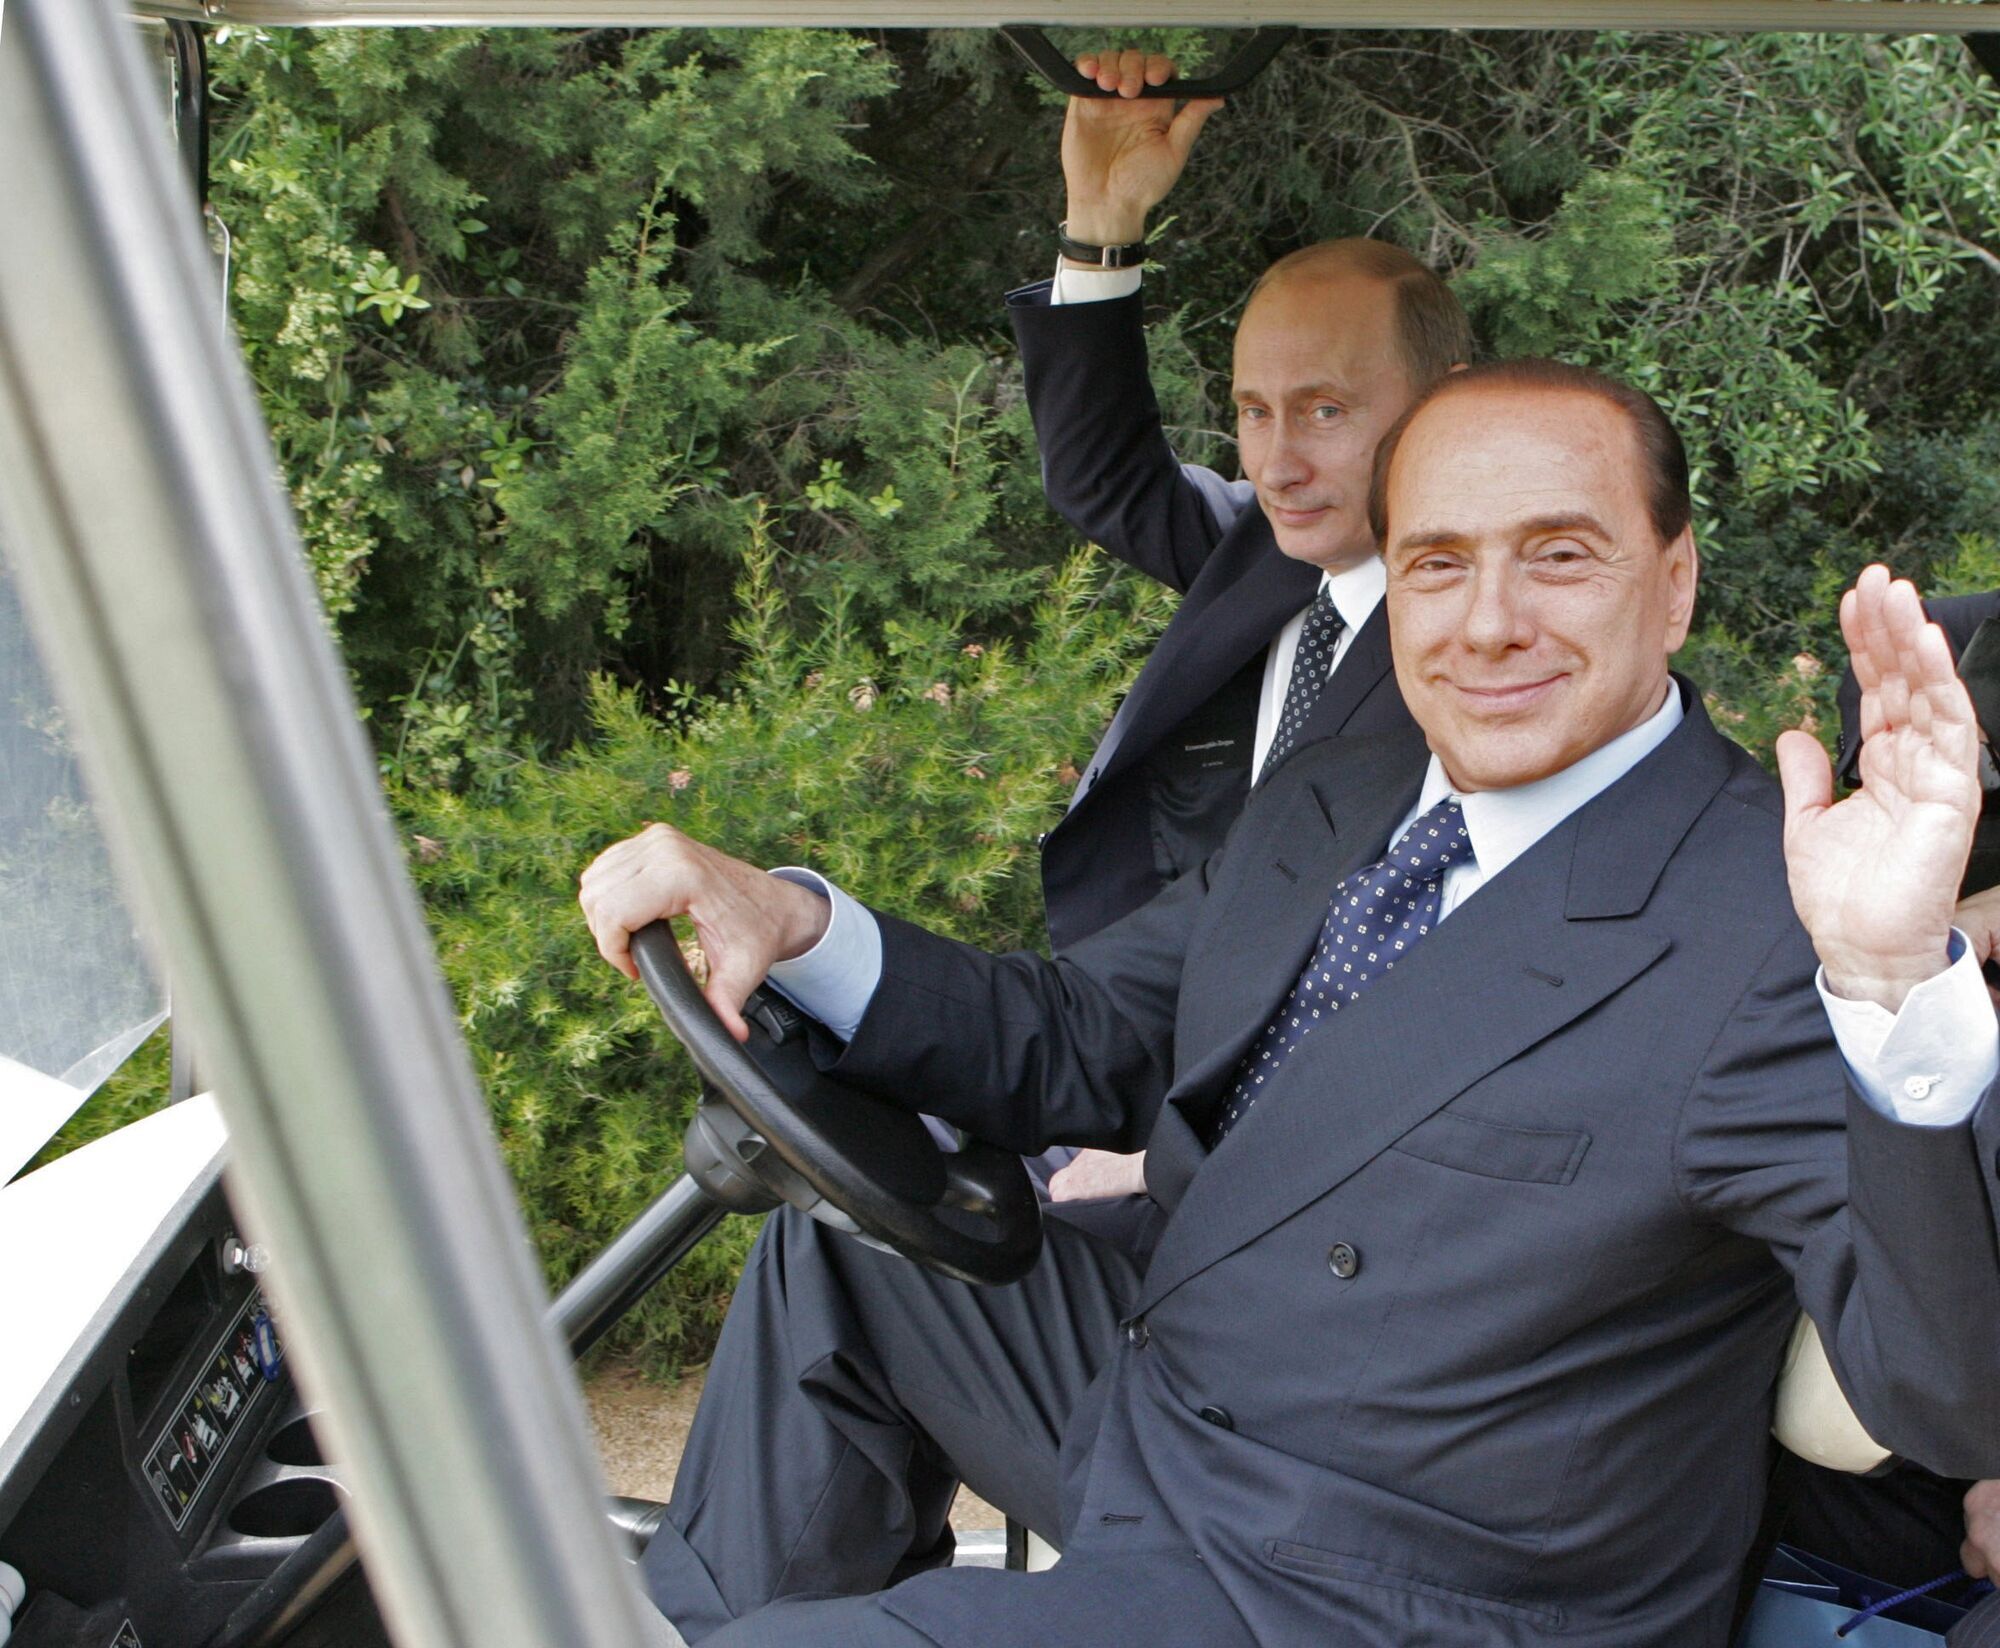 "Відчуваю себе приниженим": італієць з УАФ наїхав на Берлусконі після слів про Зеленського та Путіна